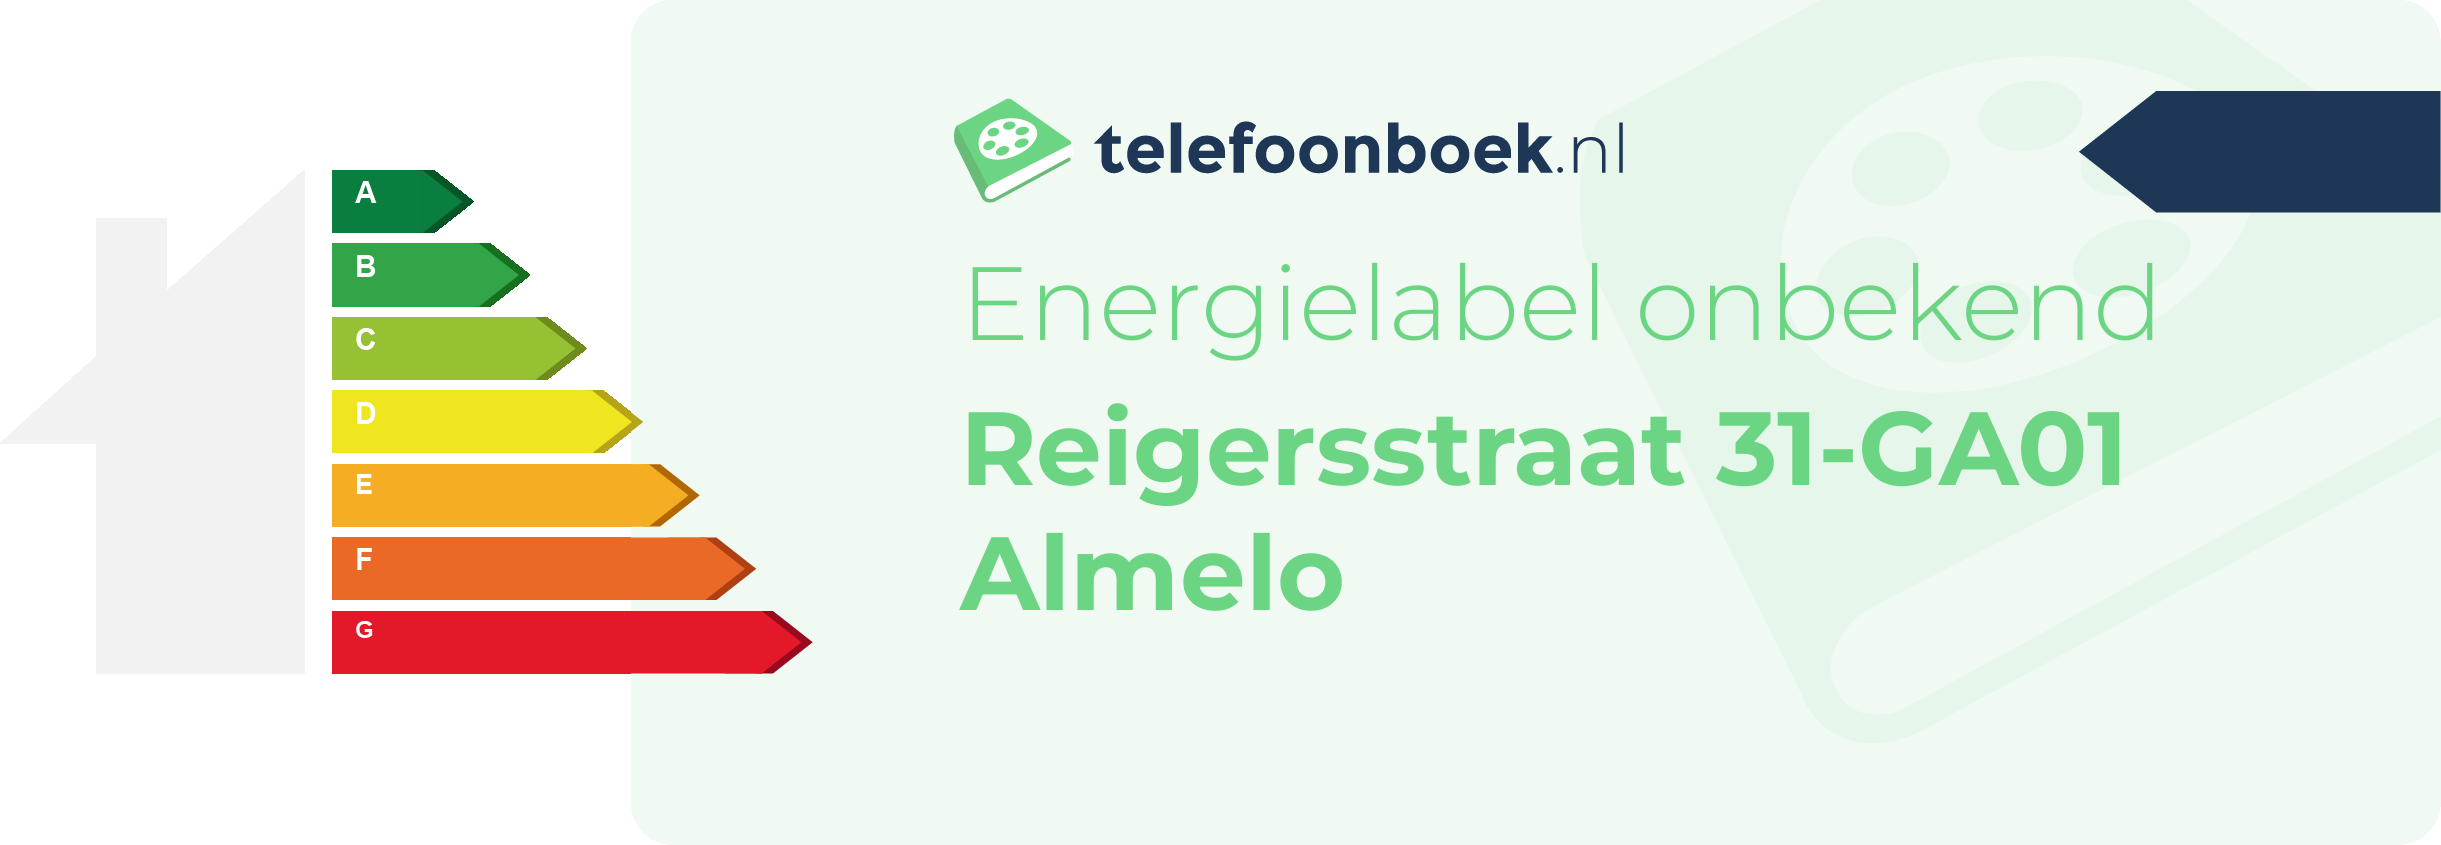 Energielabel Reigersstraat 31-GA01 Almelo